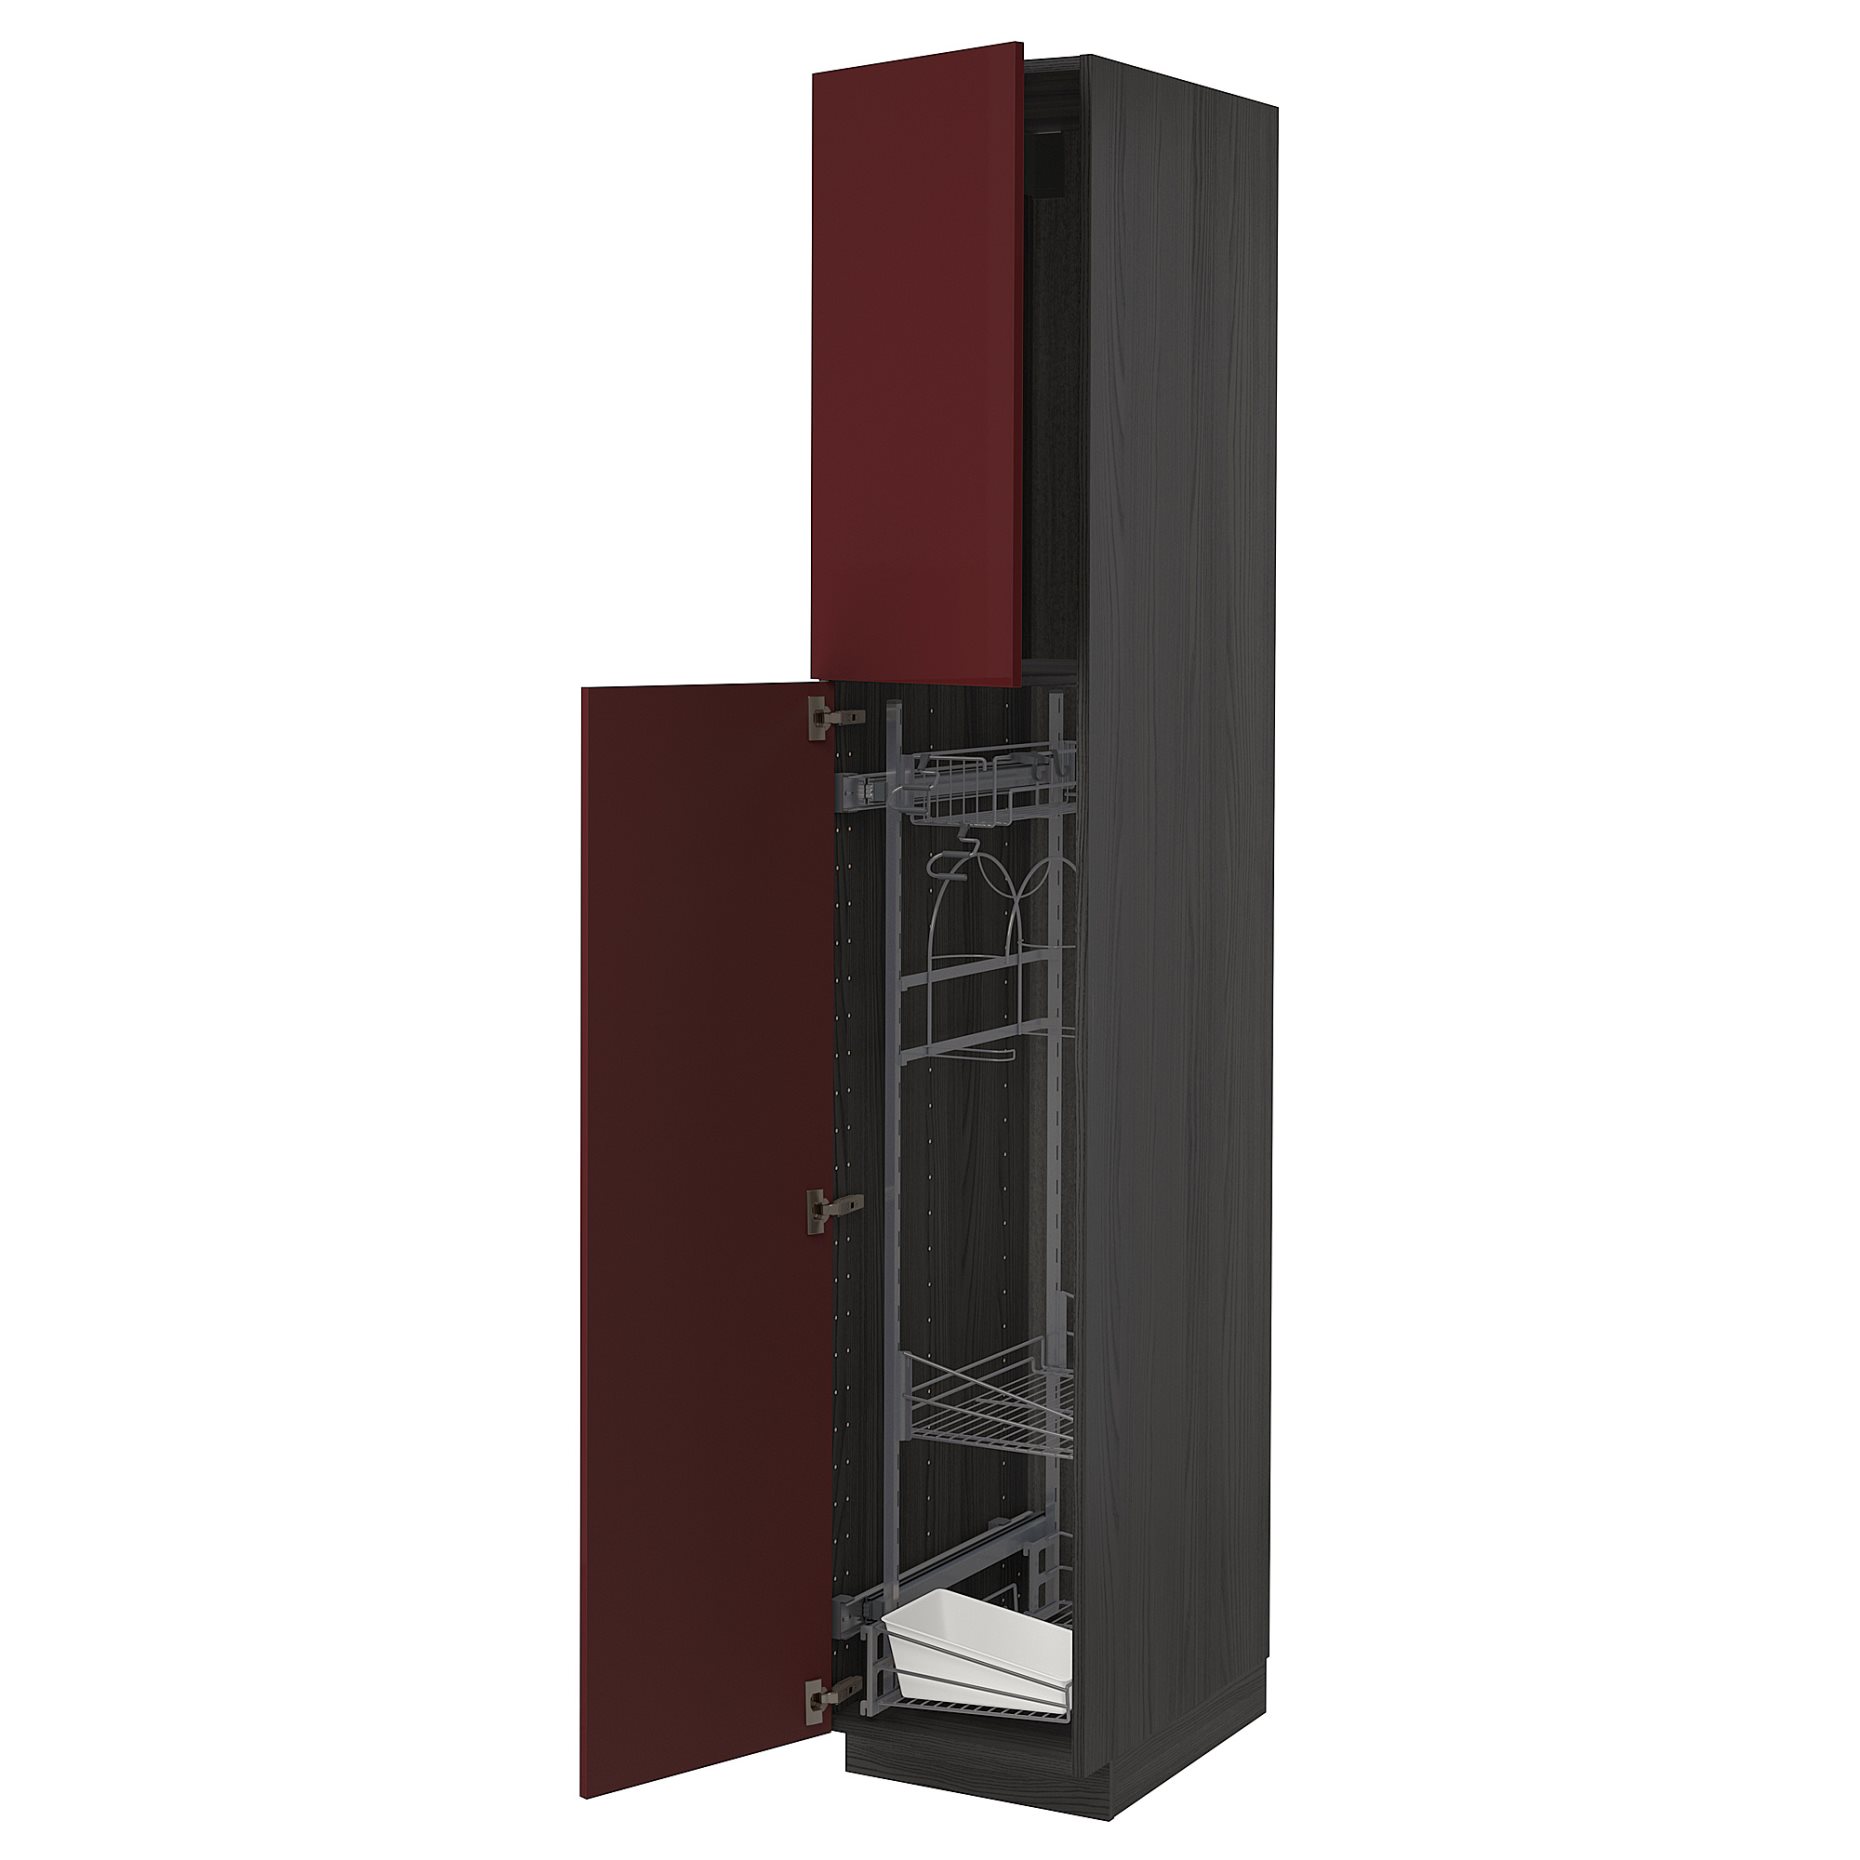 METOD, ψηλό ντουλάπι με εσωτερικά εξάρτηματα για τα είδη καθαρισμού, 40x60x220 cm, 094.653.30